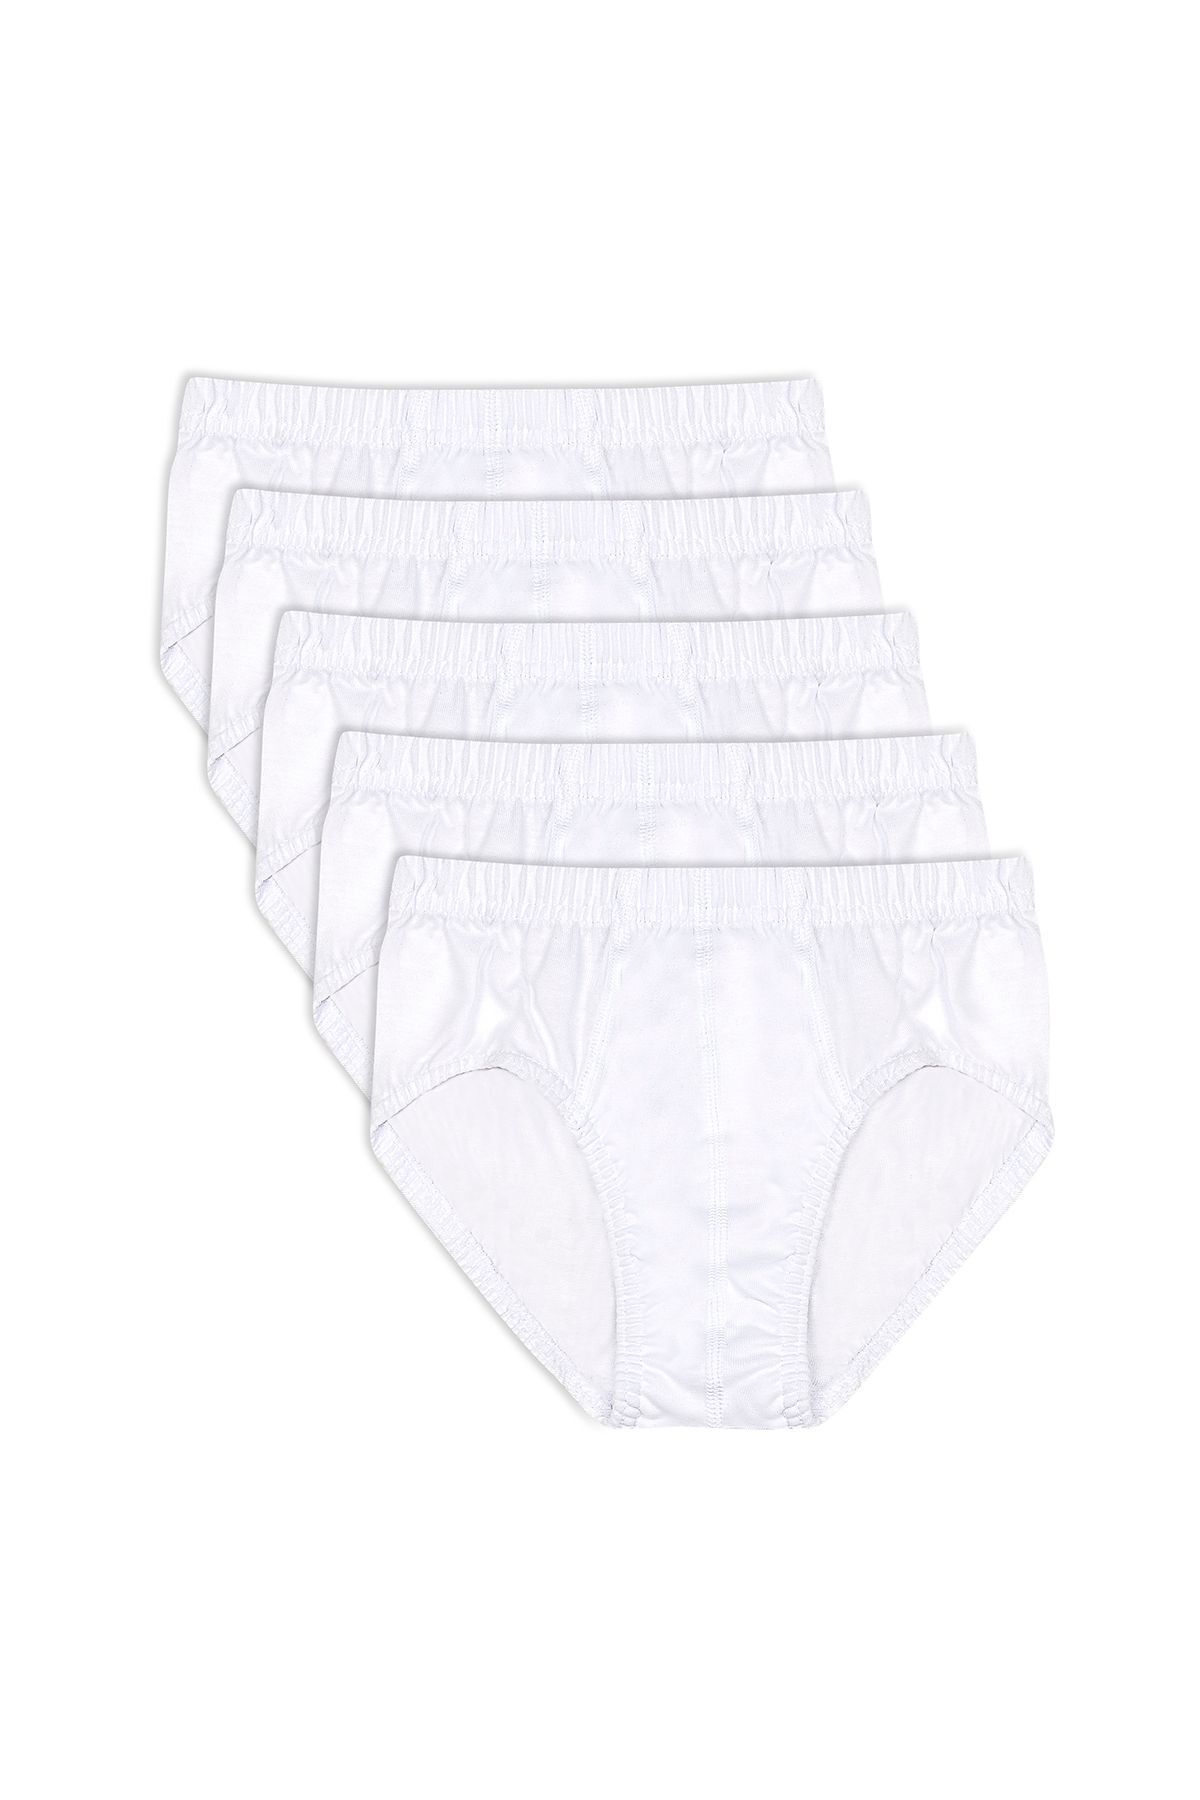 ÖZKAN underwear Özkan 0710 5'li Paket Erkek Çocuk %100 Pamuklu Süprem Esnek Rahat Külot